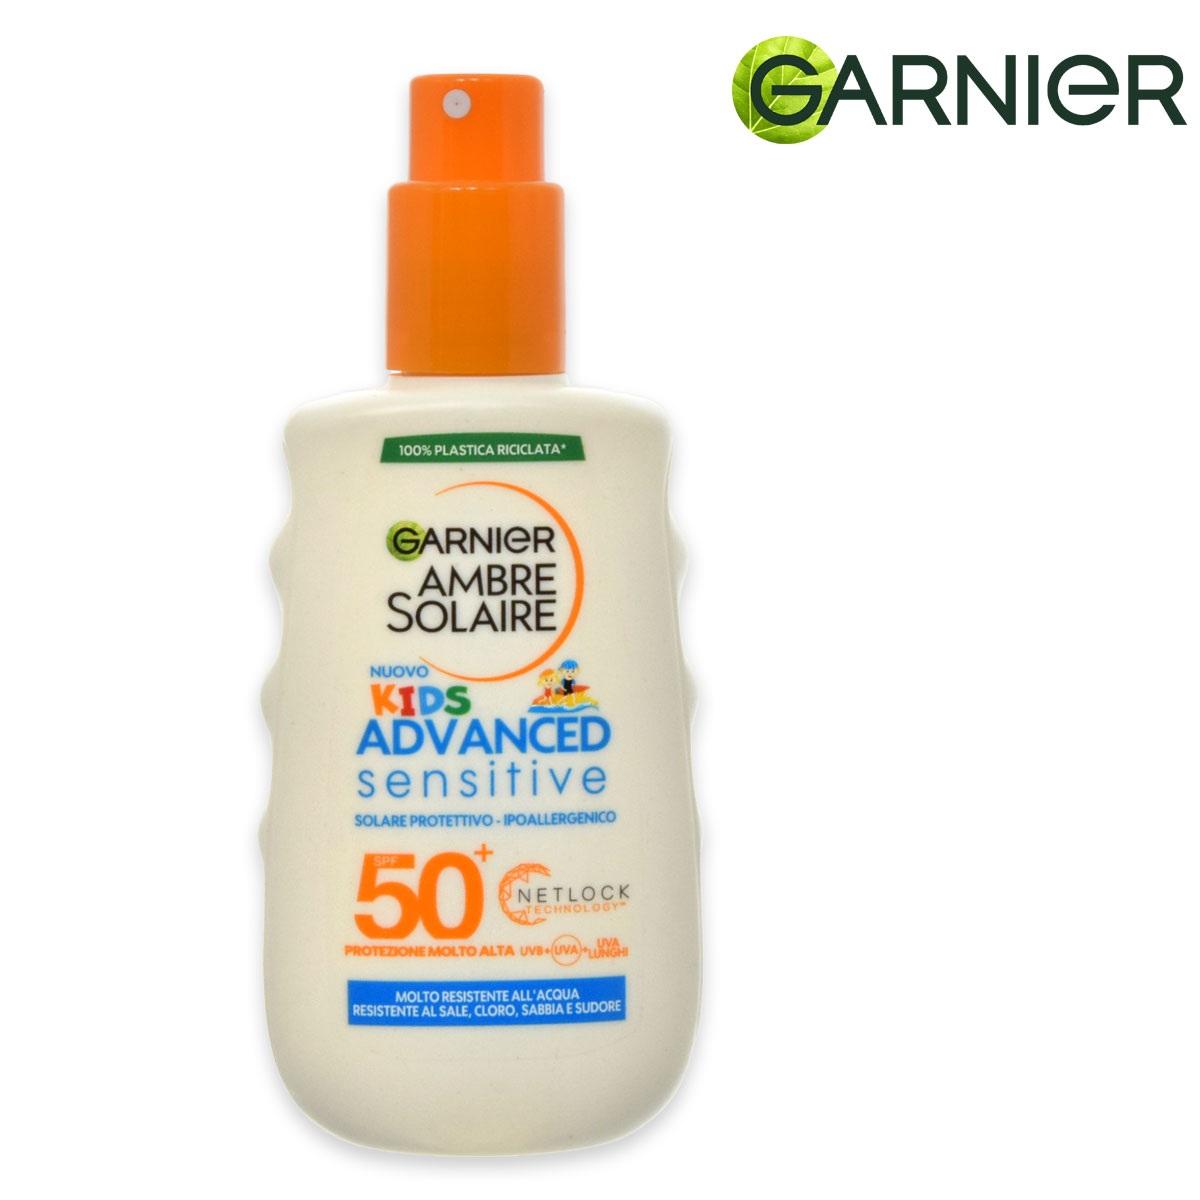 Garnier ambre solaire advanced kids protezione 50+ 200ml spray